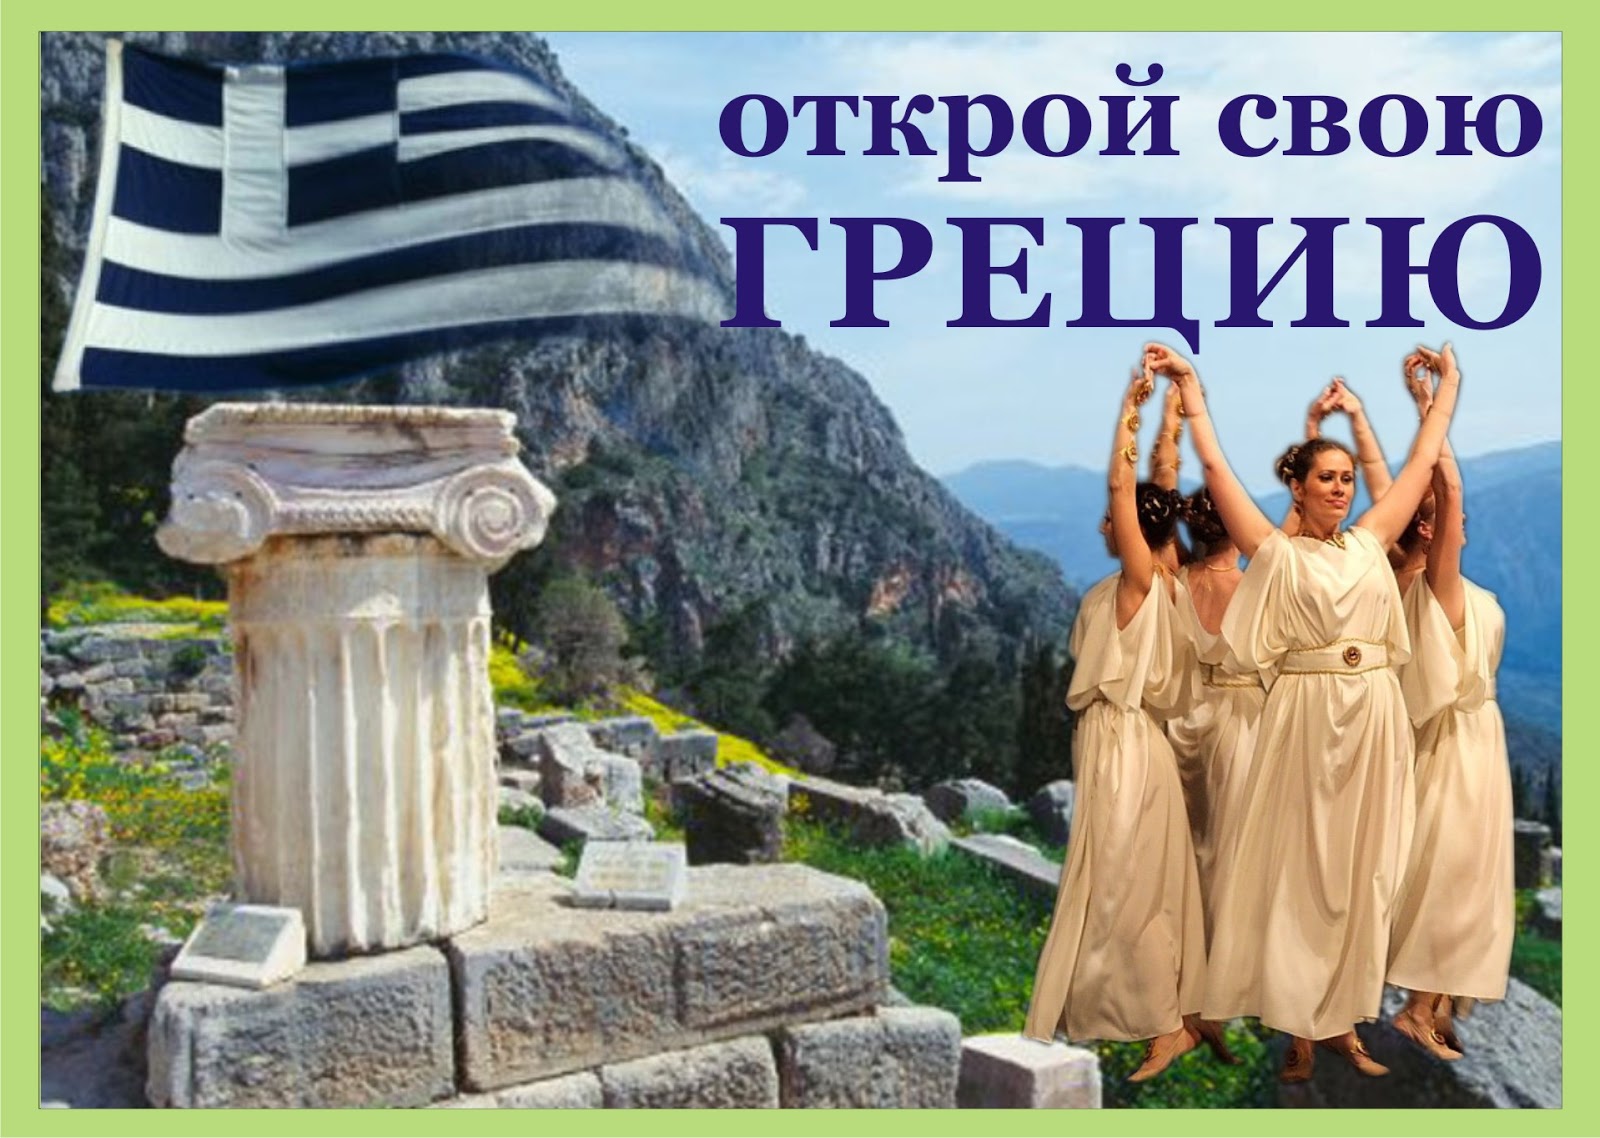 Греческая реклама. Греция надпись. Добро пожаловать в Грецию. Греция с надписью Греция. Греция реклама.